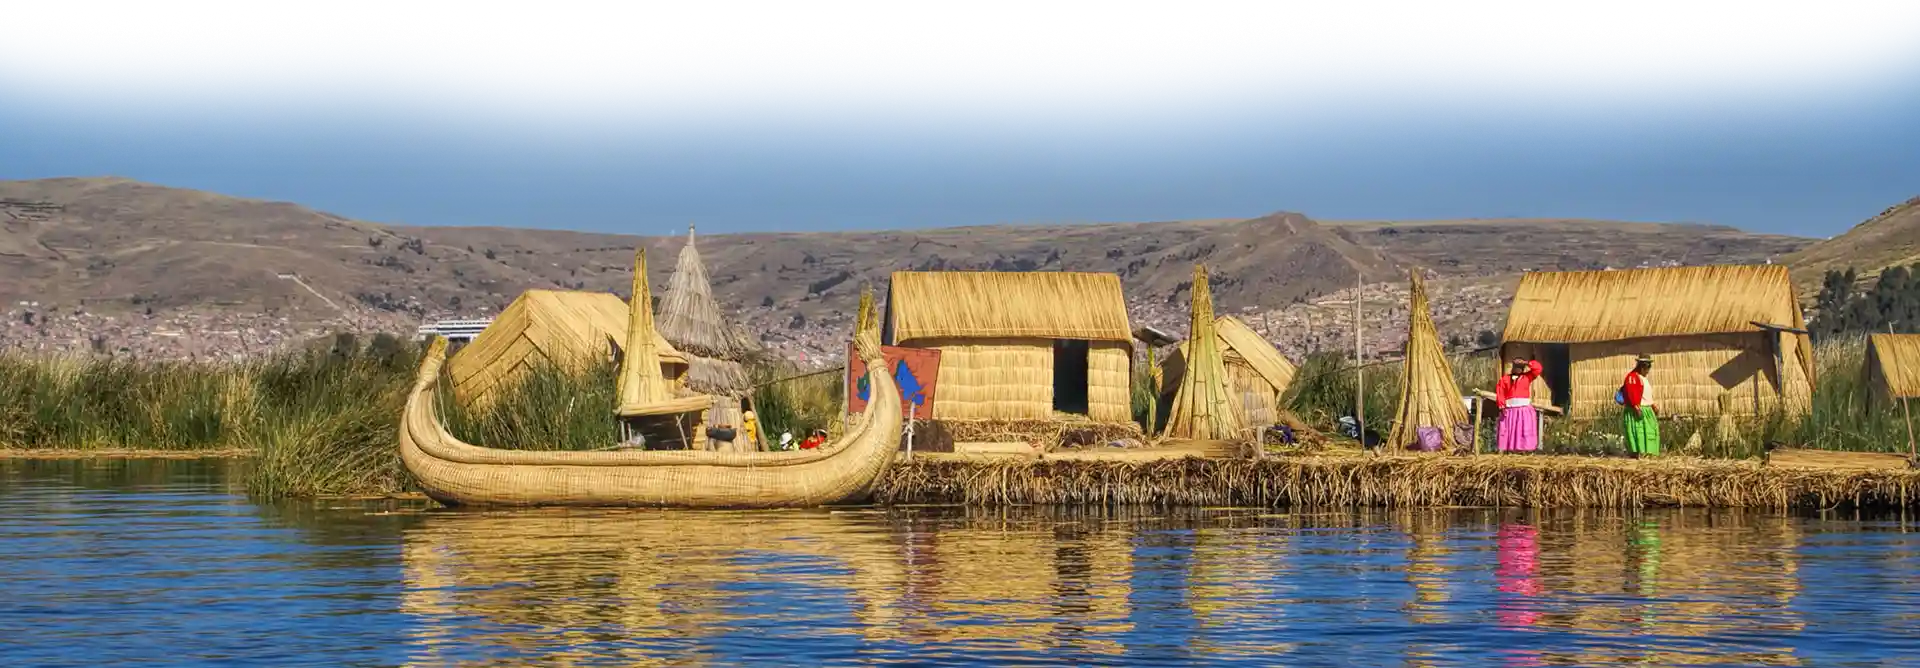 peru floating village titicaca